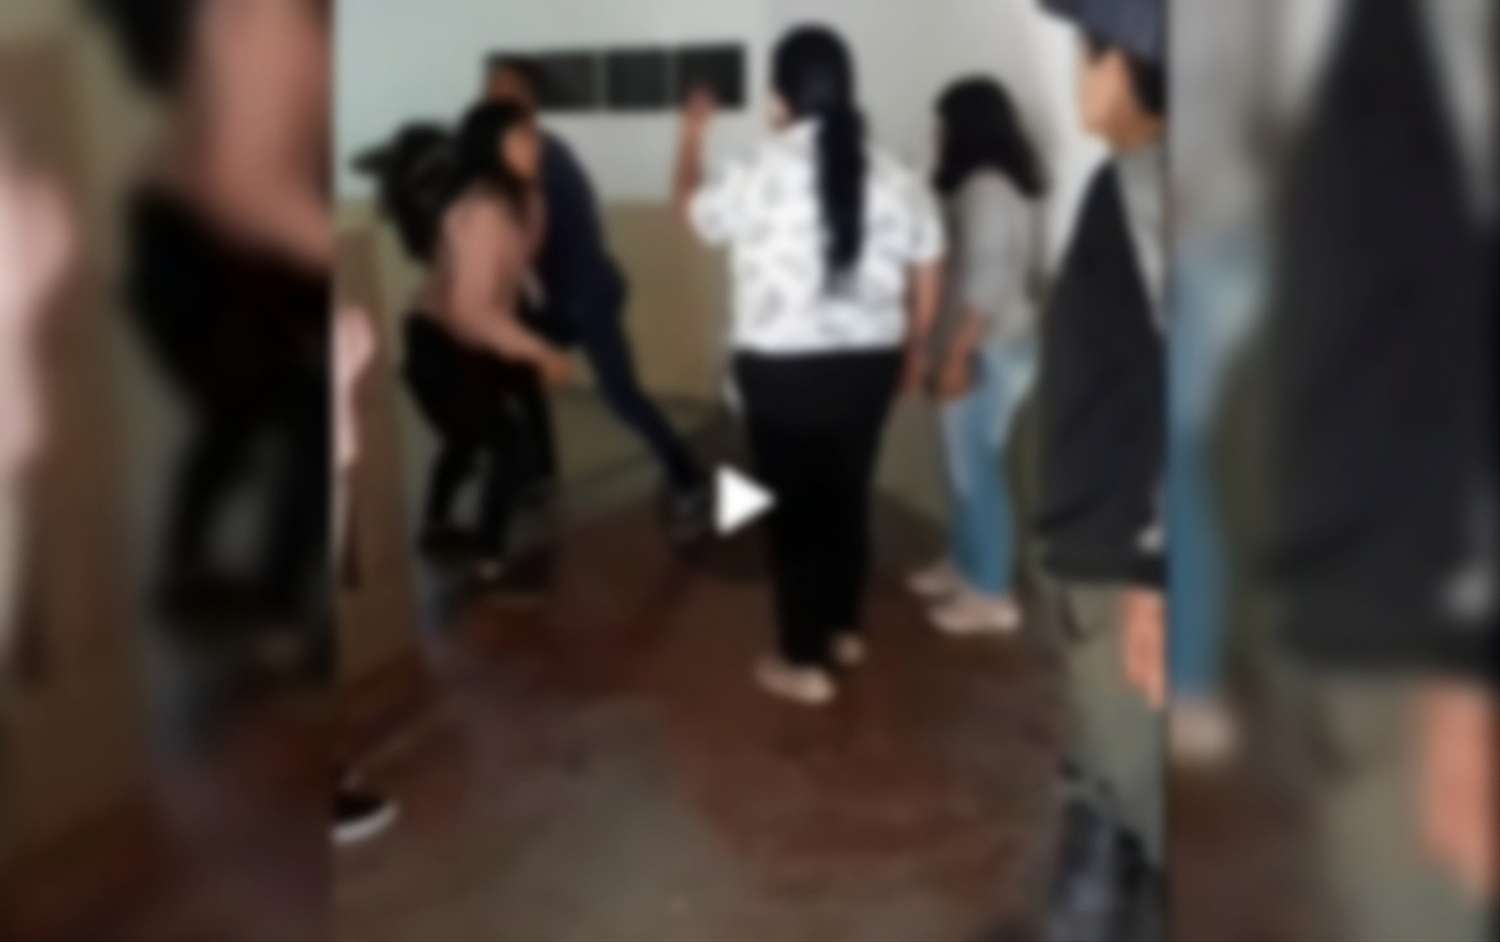 Violencia en la escuela: madre, hija y yerno entraron y agredieron a una alumna